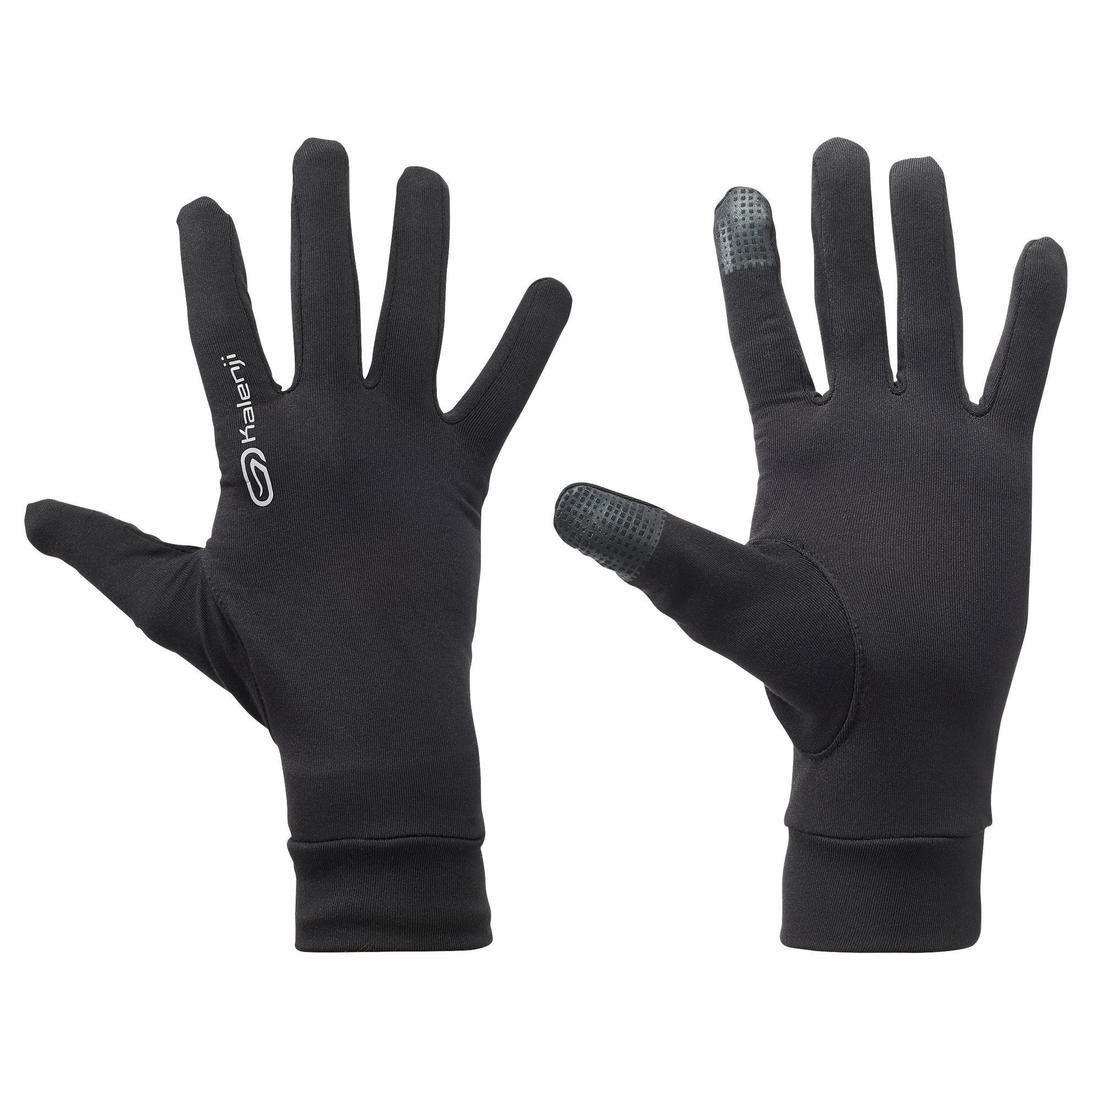 KALENJI - Tactile Running Gloves, Black